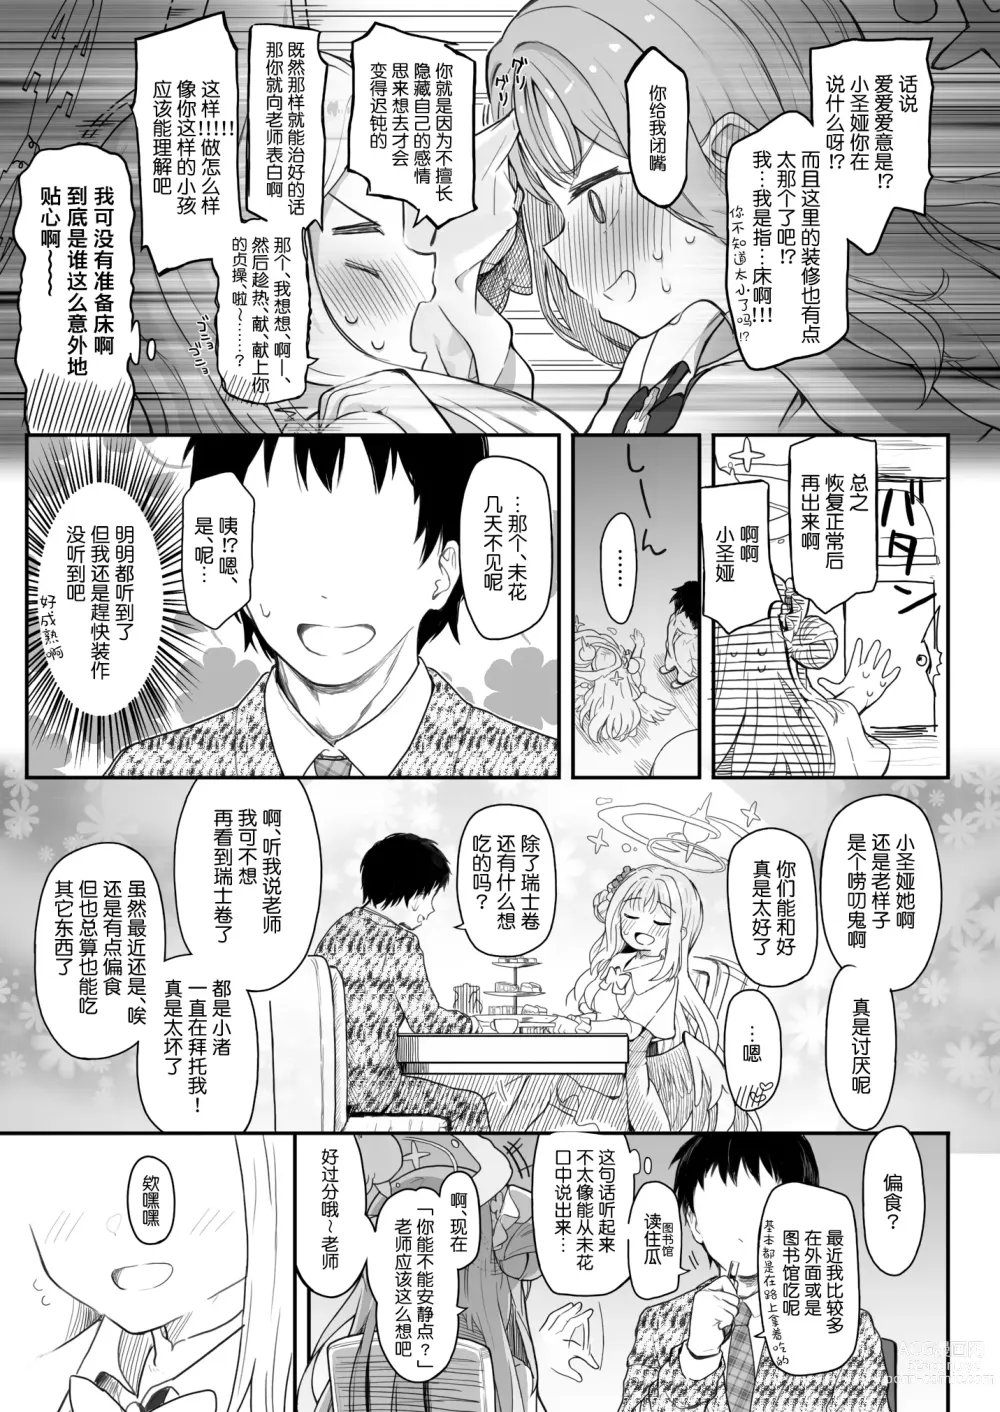 Page 6 of doujinshi Tenshi de Warui Ko